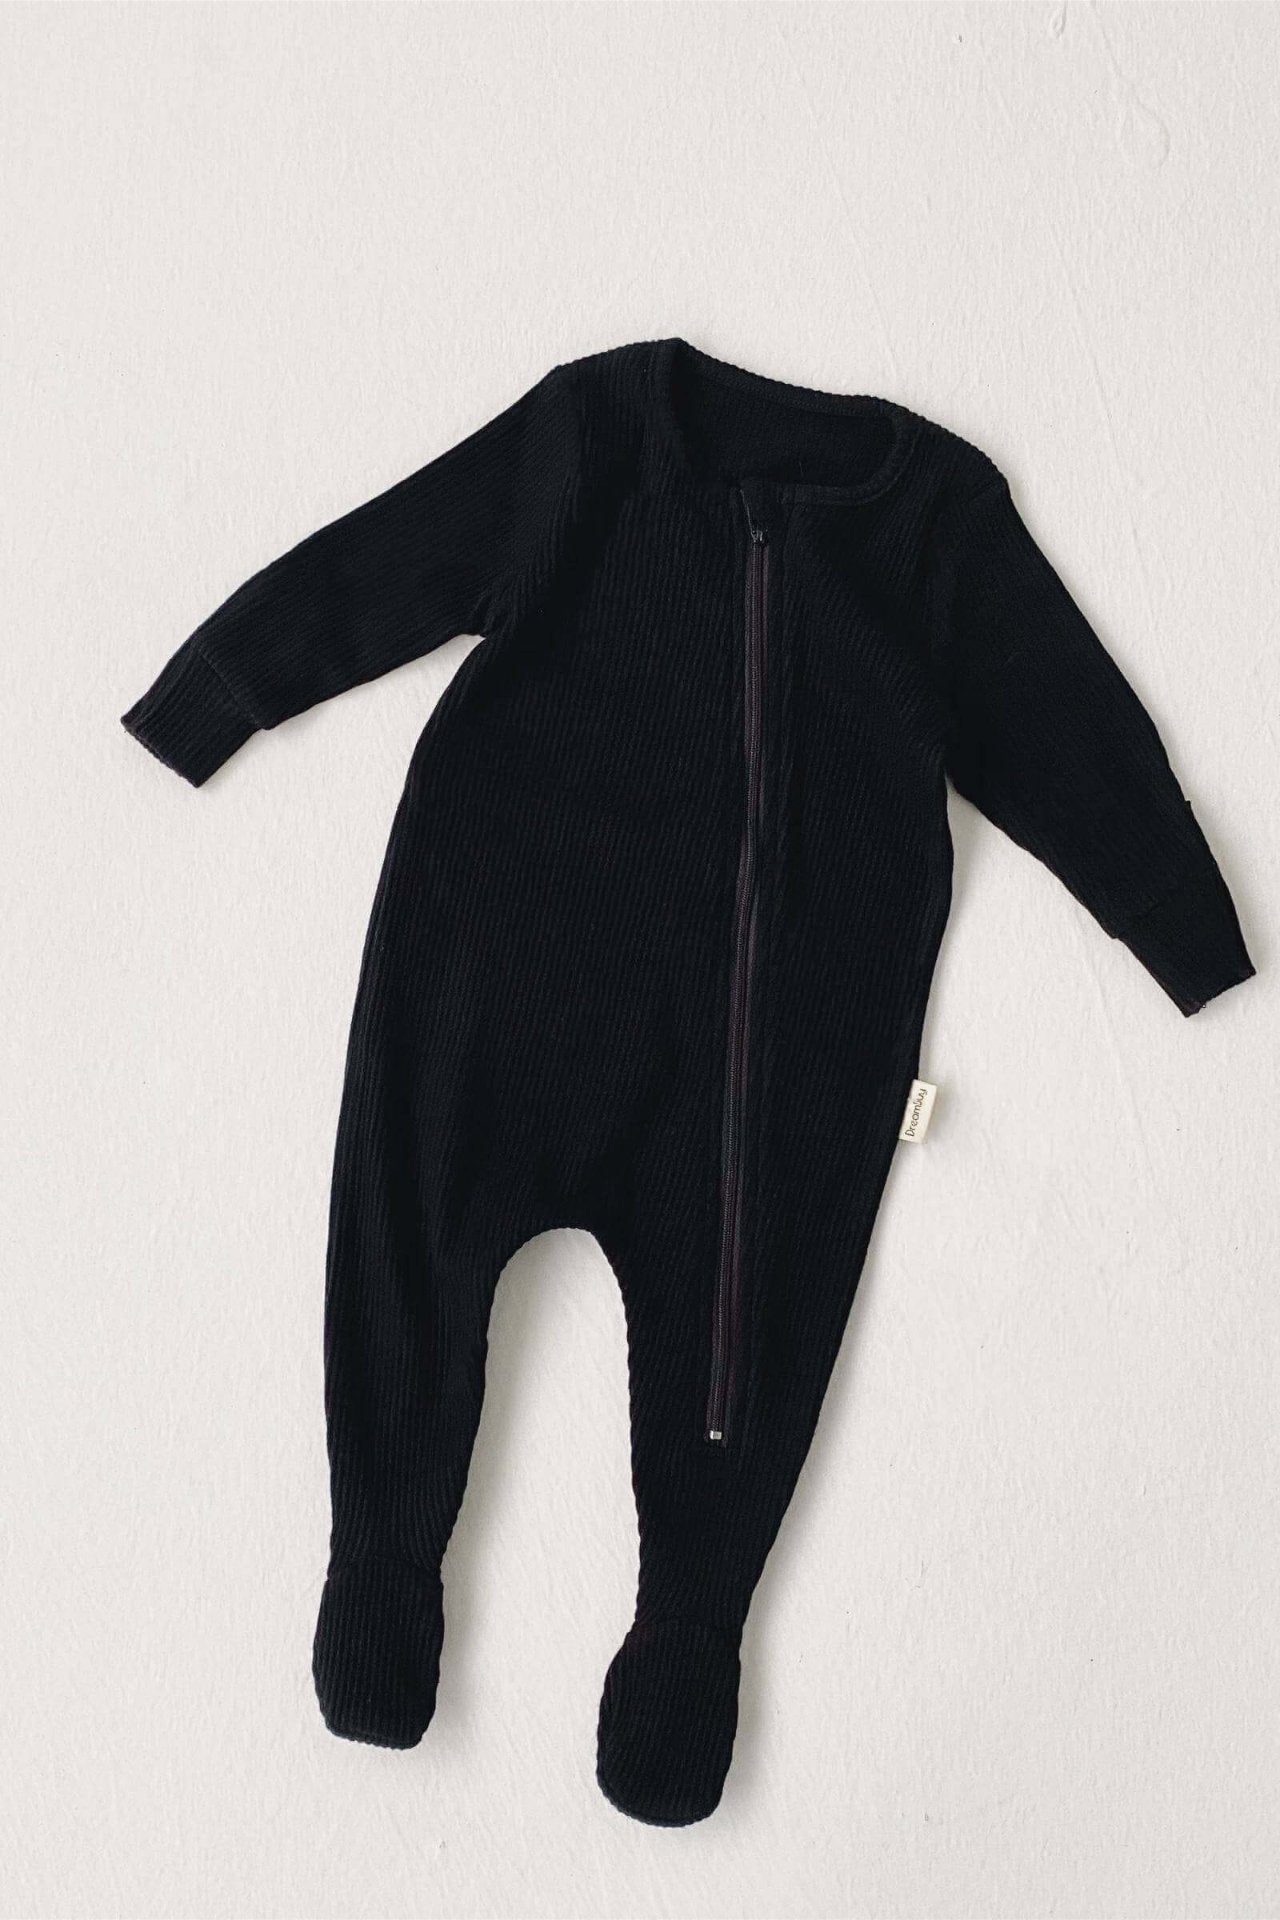 Black Zip Sleepsuit Ribbed Romper Babygrow - Mack & Harvie